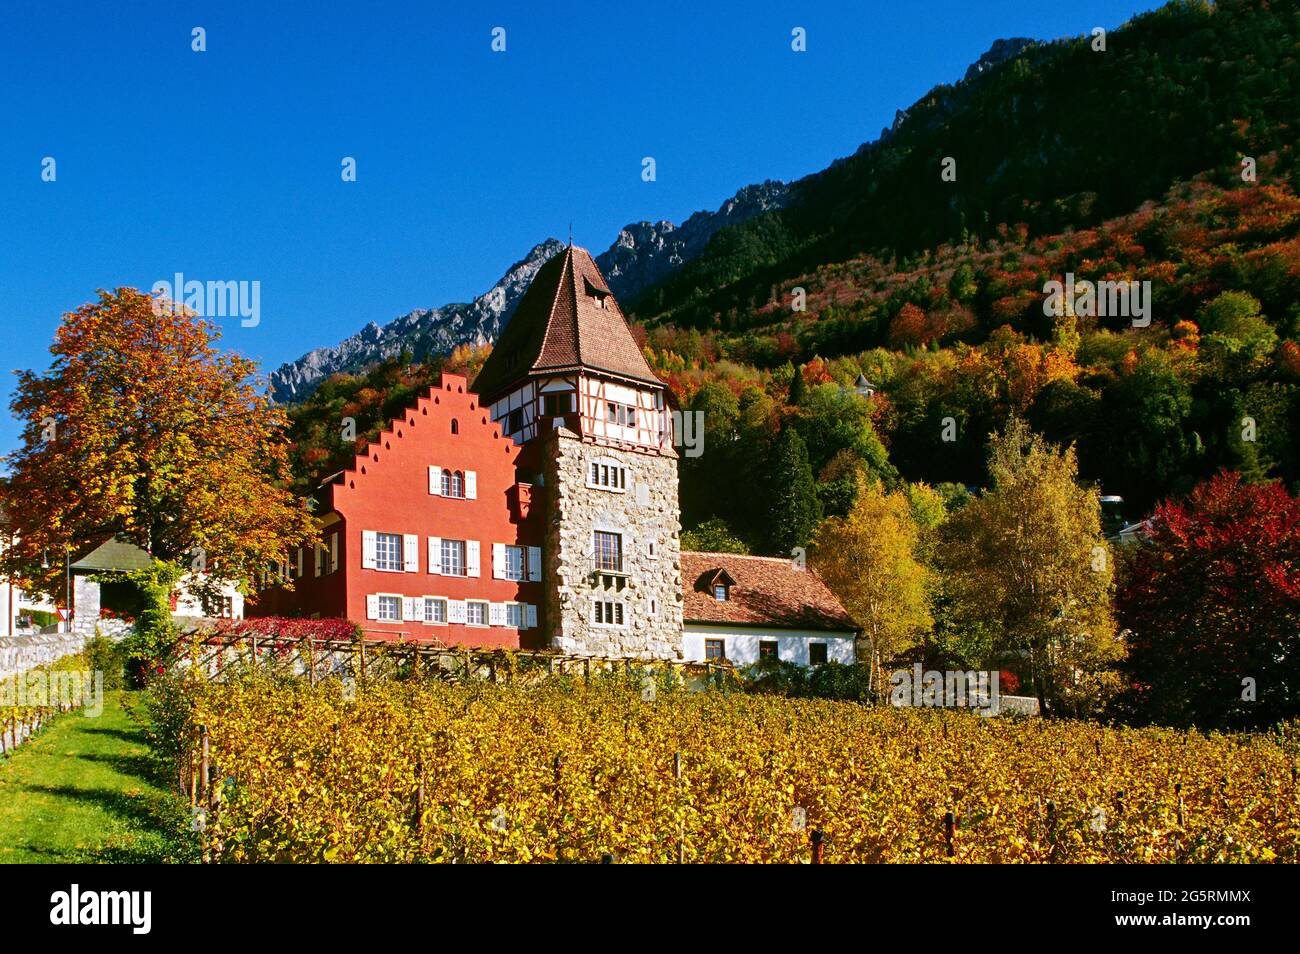 Rotes Haus, Vaduz, Lichtenstein, Torkelgebäude, Turm, Rebberg Stock Photo